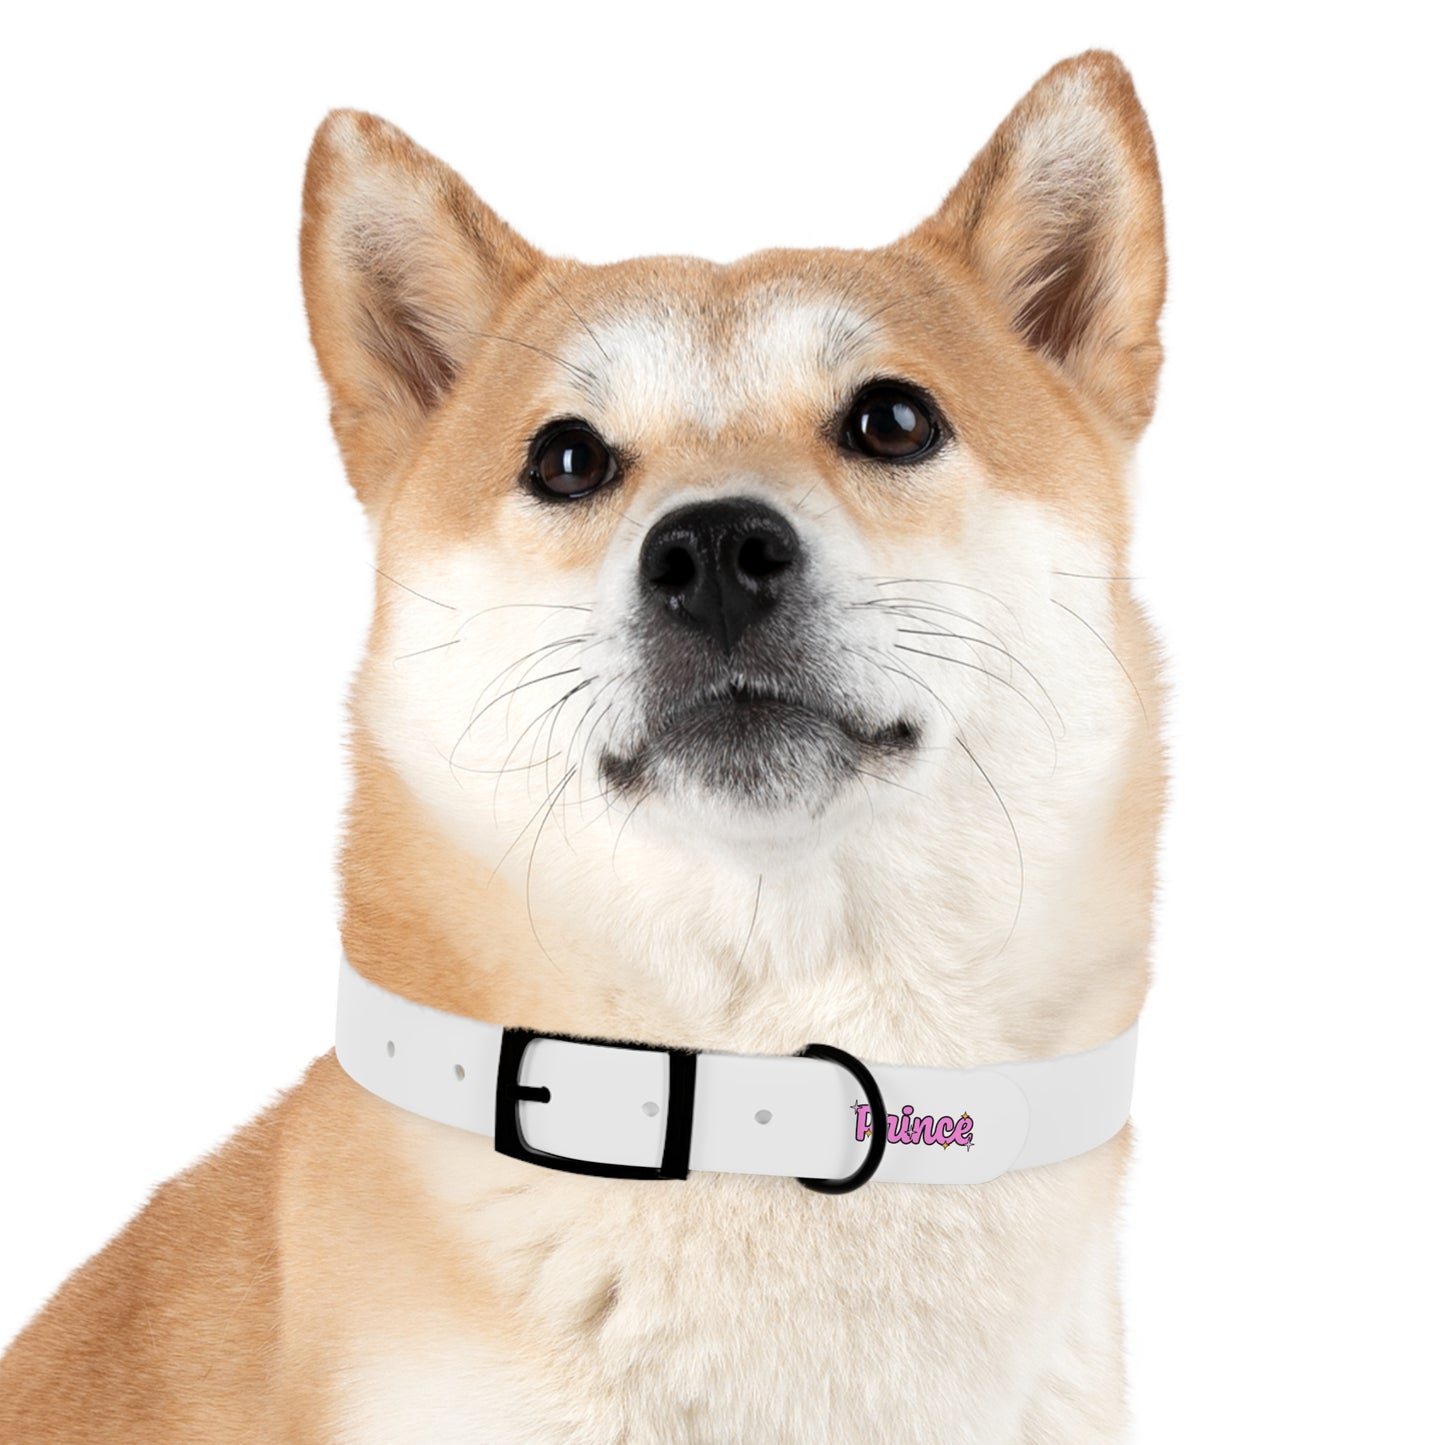 Prince Dog Collar